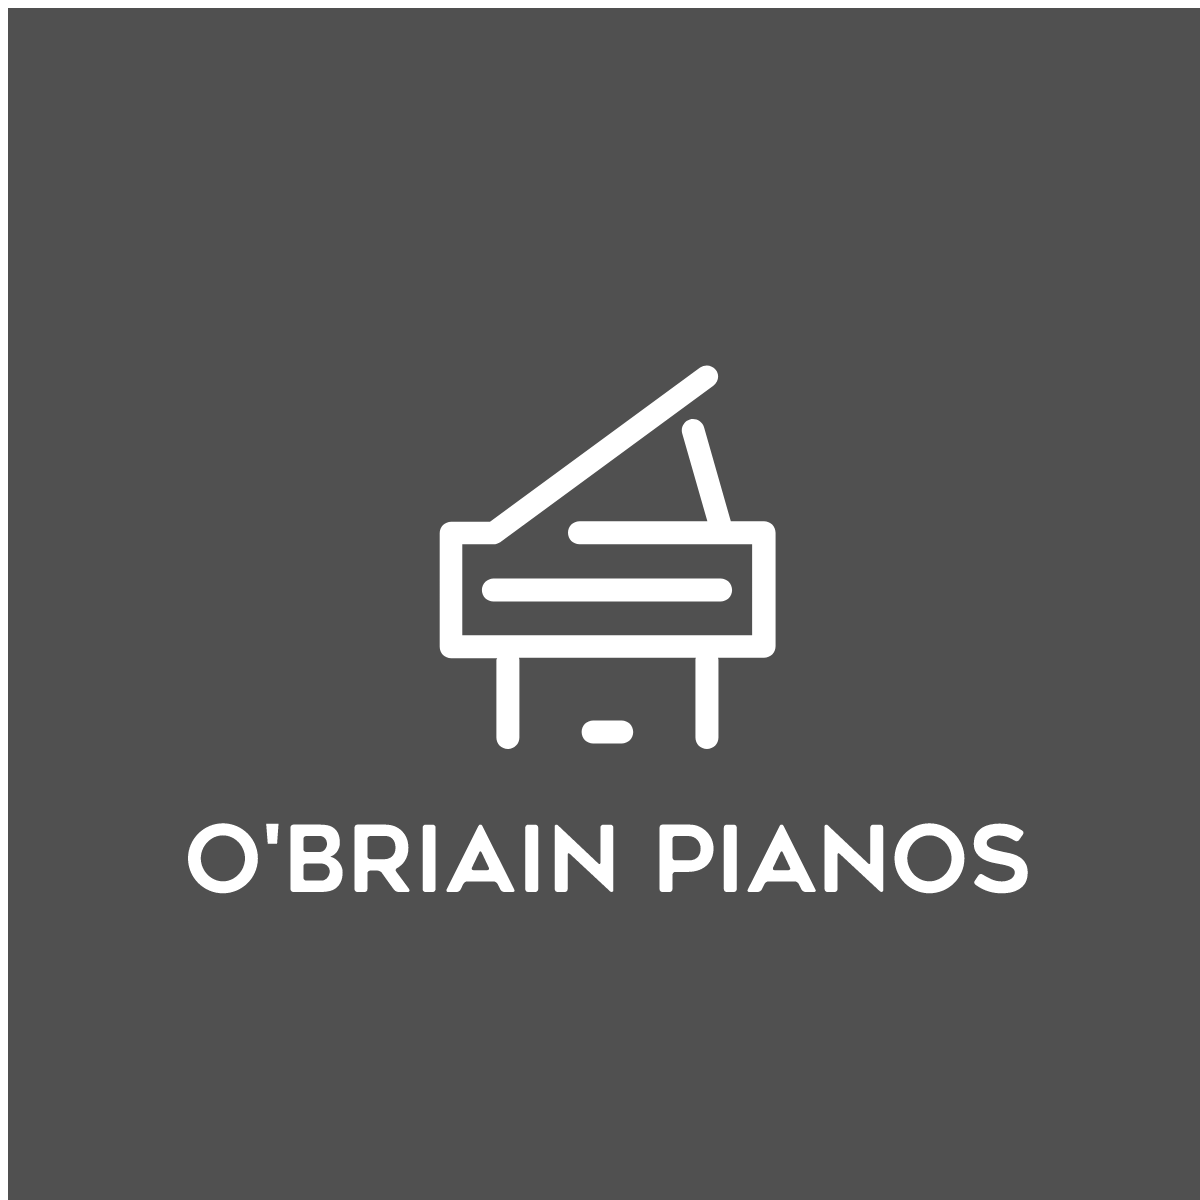 O'Briain Pianos | Lucan, Dublin-O'Briain Pianos